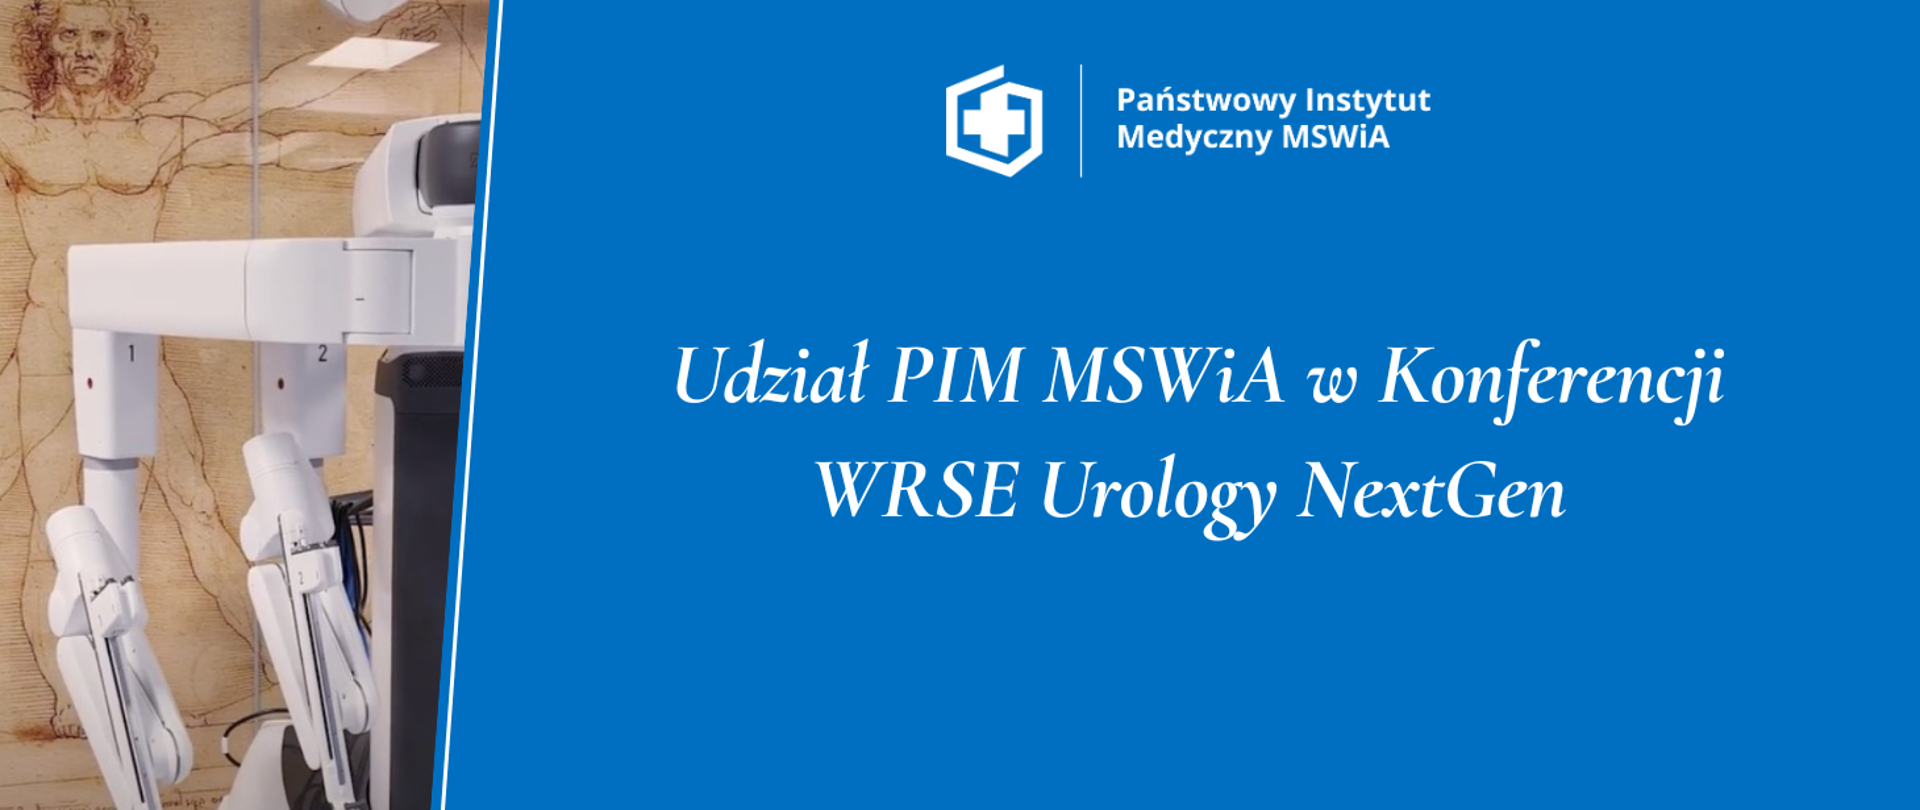 Udział PIM MSWiA w Konferencji WRSE Urology NextGen